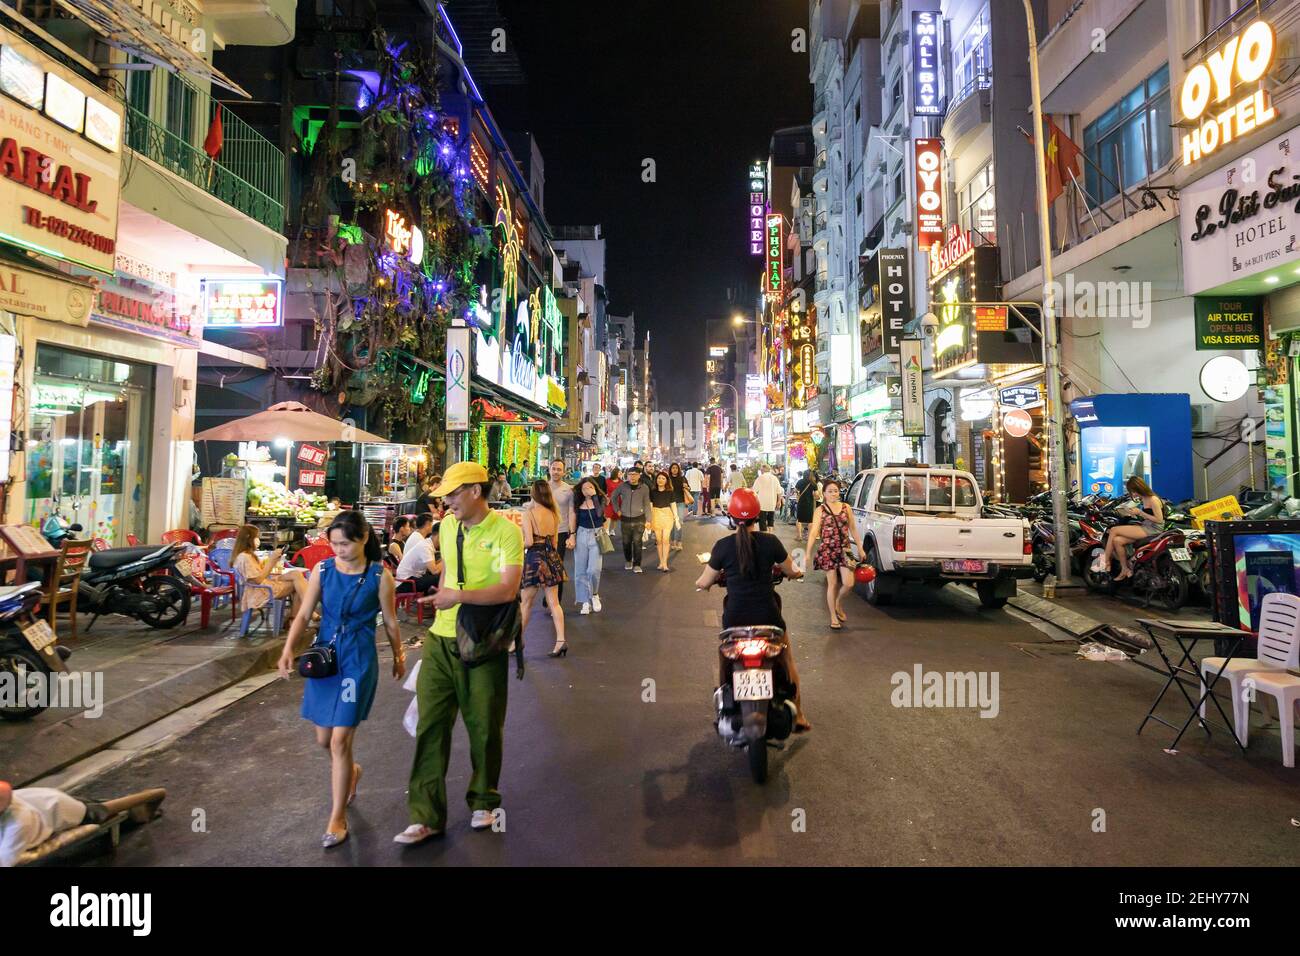 Les gens qui se promène dans la rue animée et colorée de Bui Vien, célèbre pour sa vie nocturne animée Banque D'Images